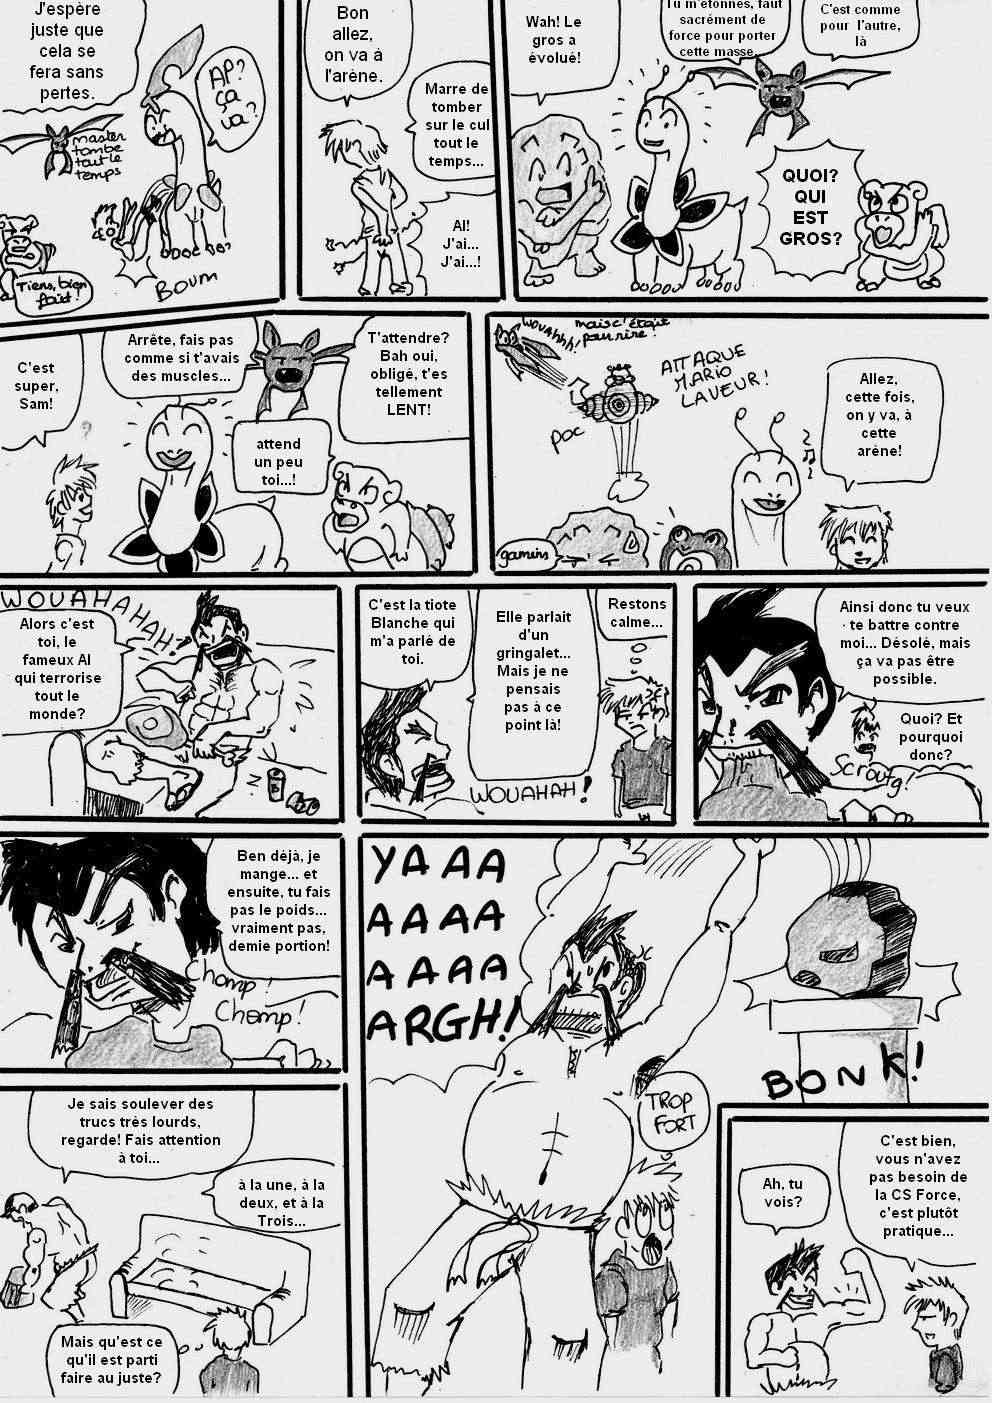 [Argent] shewolf's comic nuz - Page 10 Planch16